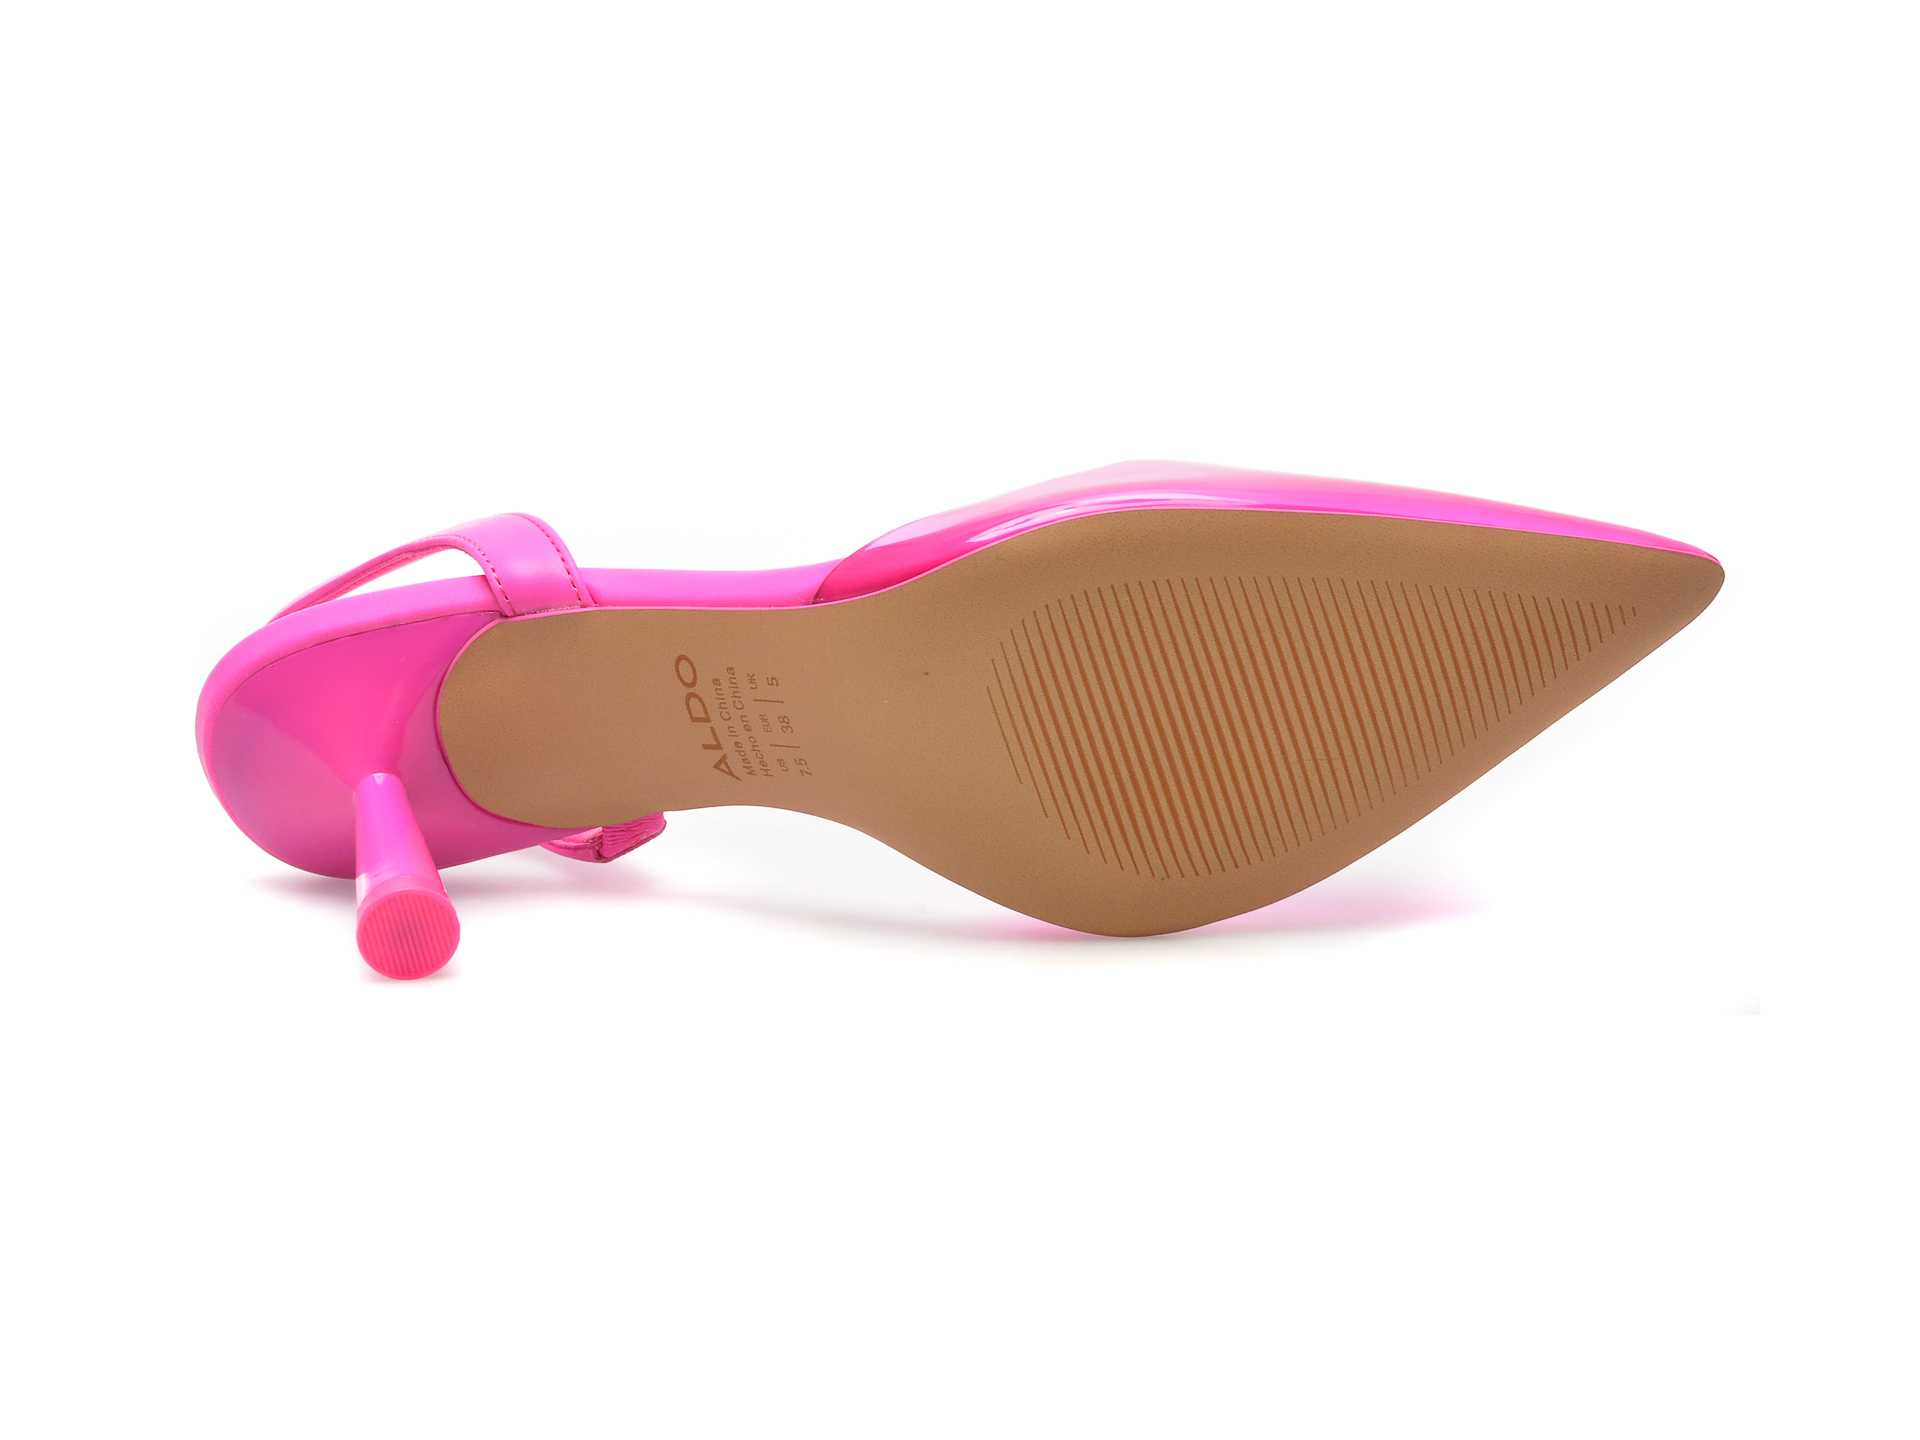 Pantofi ALDO roz, ENAVER651, din pvc